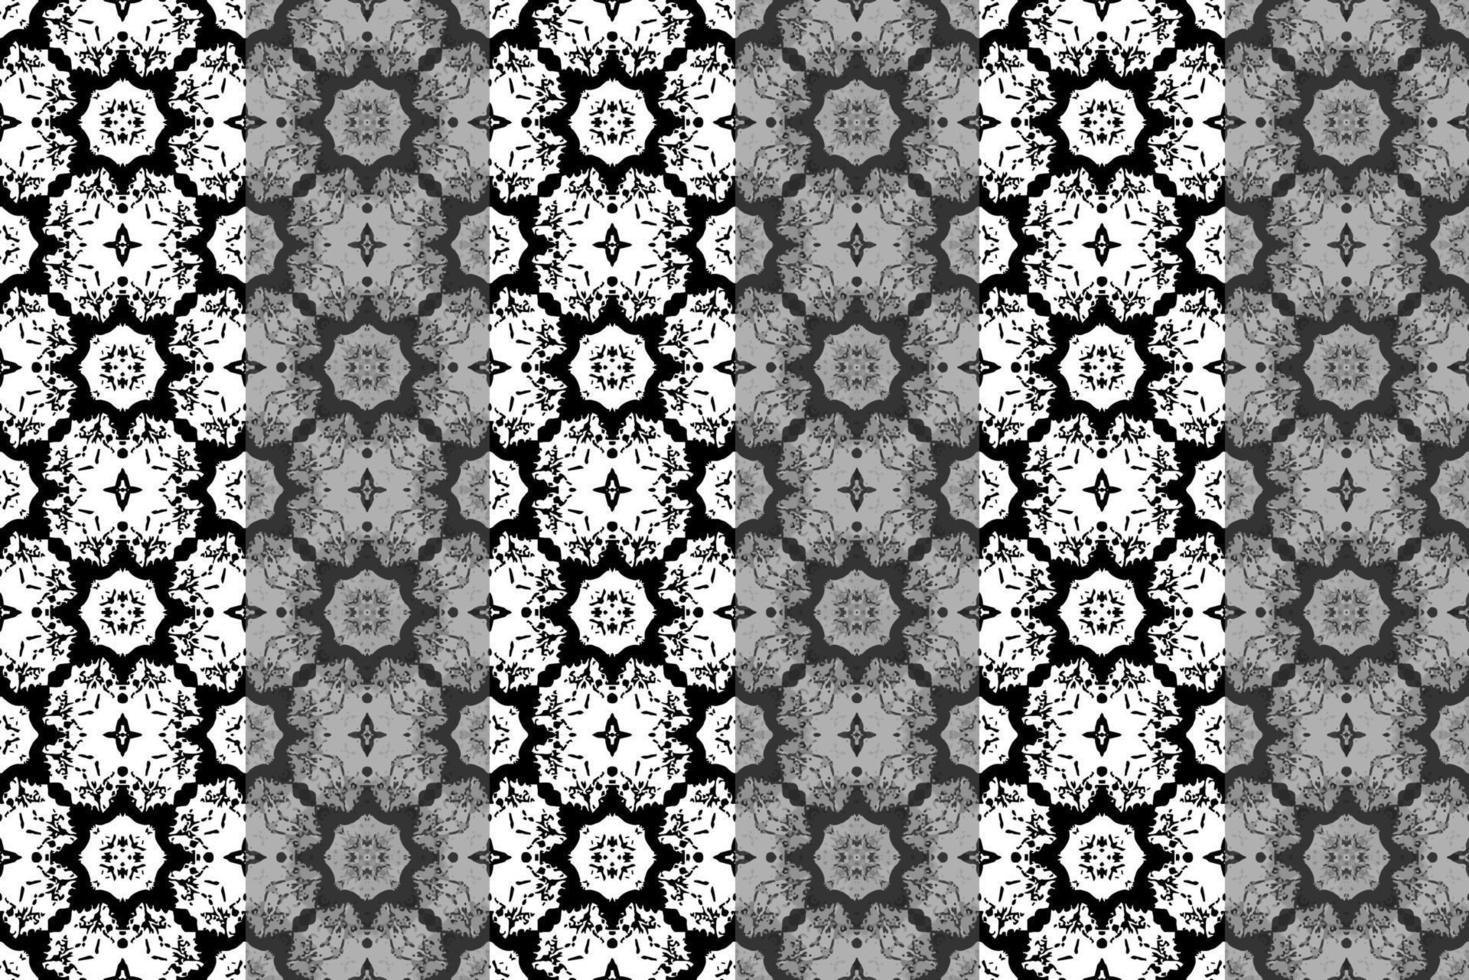 abstract naadloos patroon, naadloos behang, naadloos achtergrond ontworpen voor gebruik voor interieur, behang, kleding stof, gordijn, tapijt, kleding, batik, satijn, achtergrond, illustratie, borduurwerk. vector